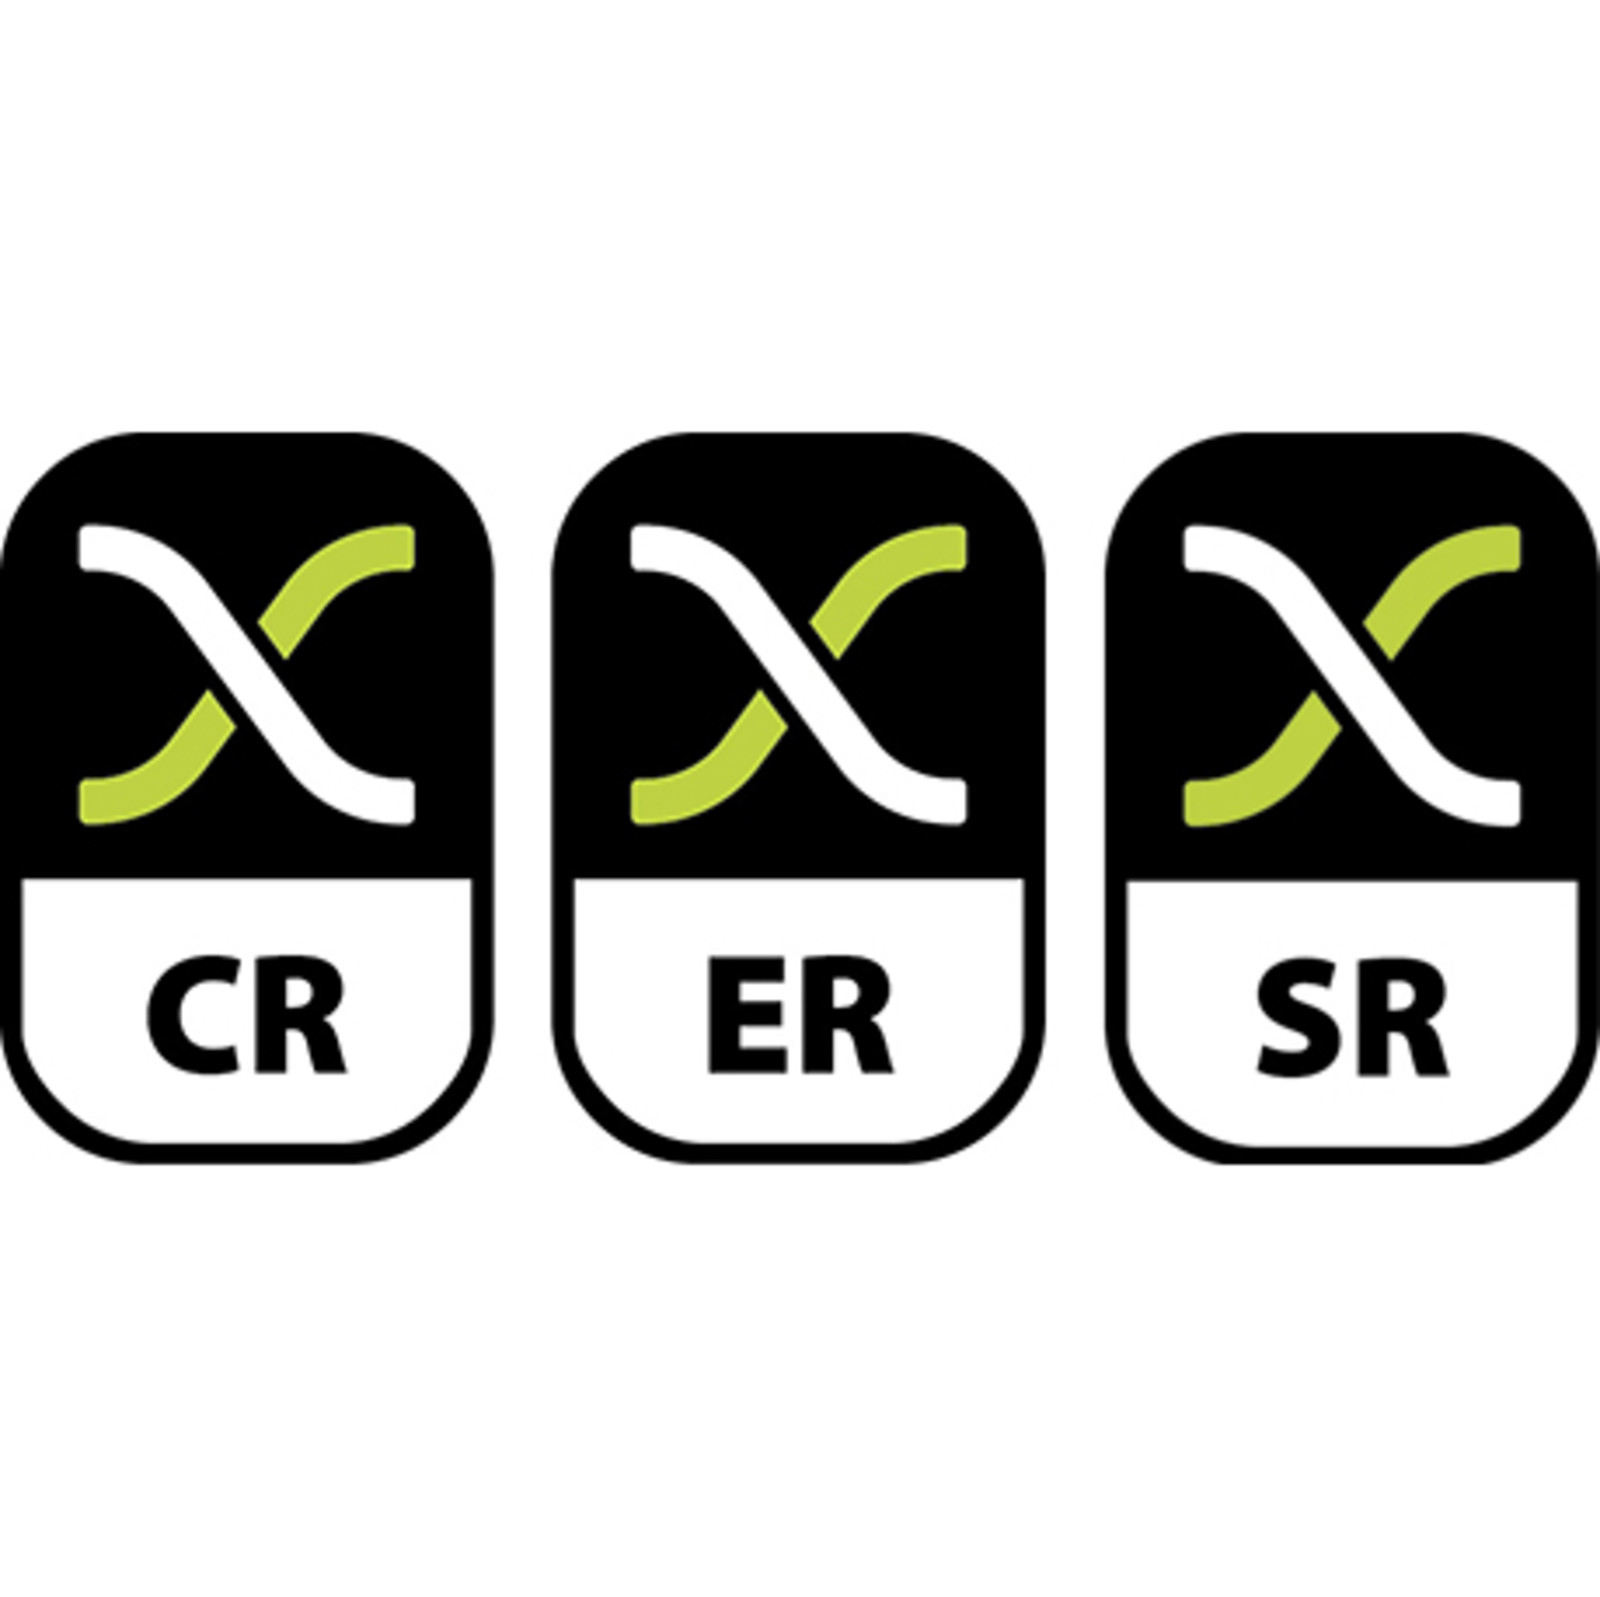 Kit de jonction Excel SR-ER CR - Blanc Gris